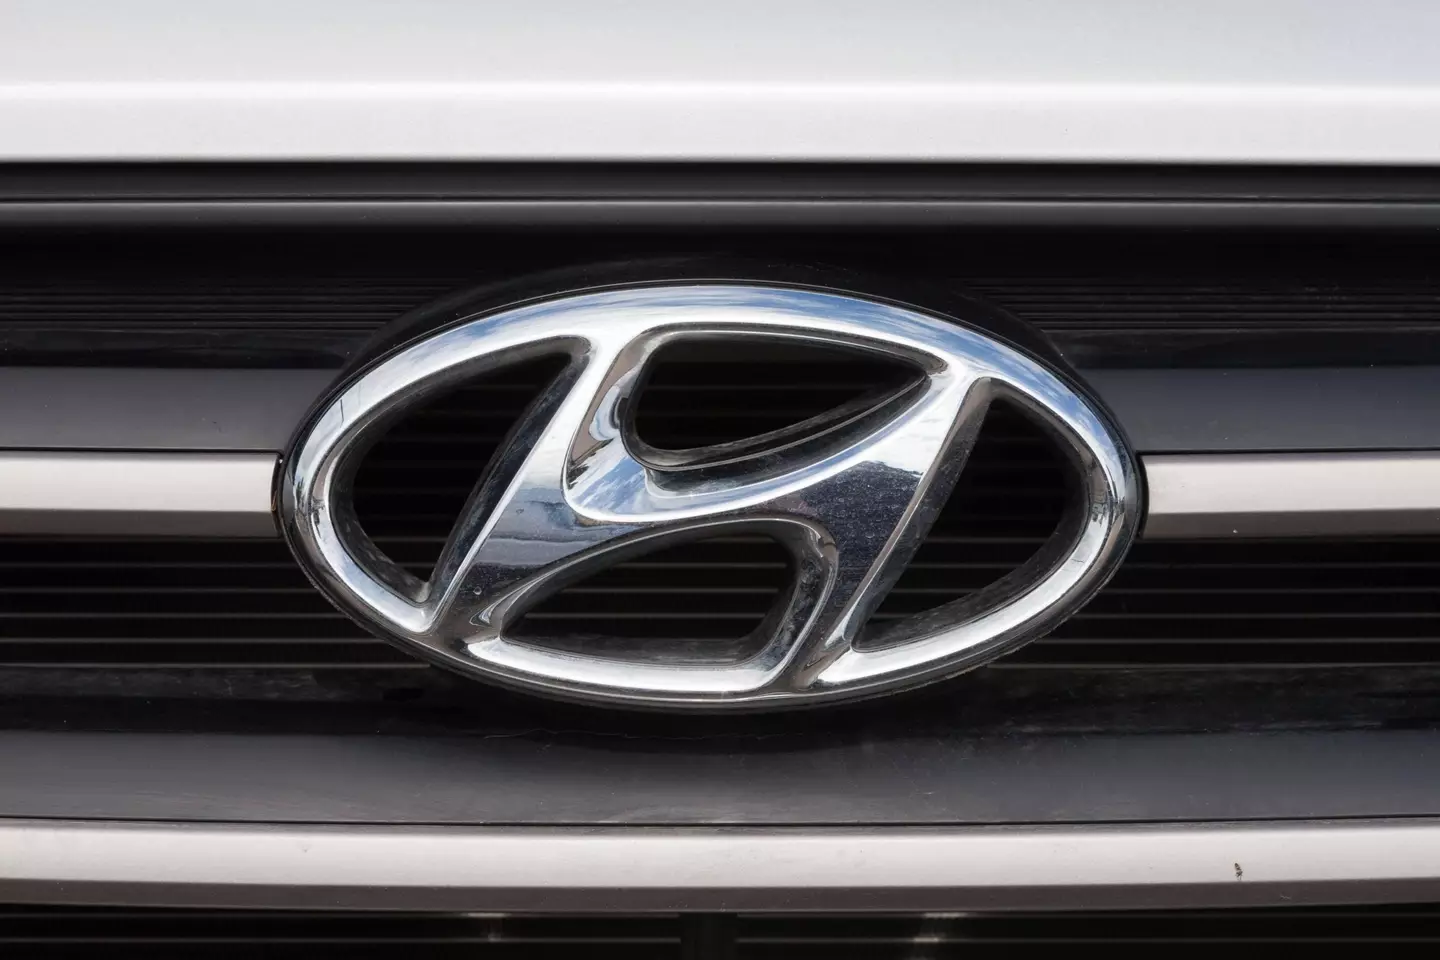 The Hyundai logo has a hidden meaning.